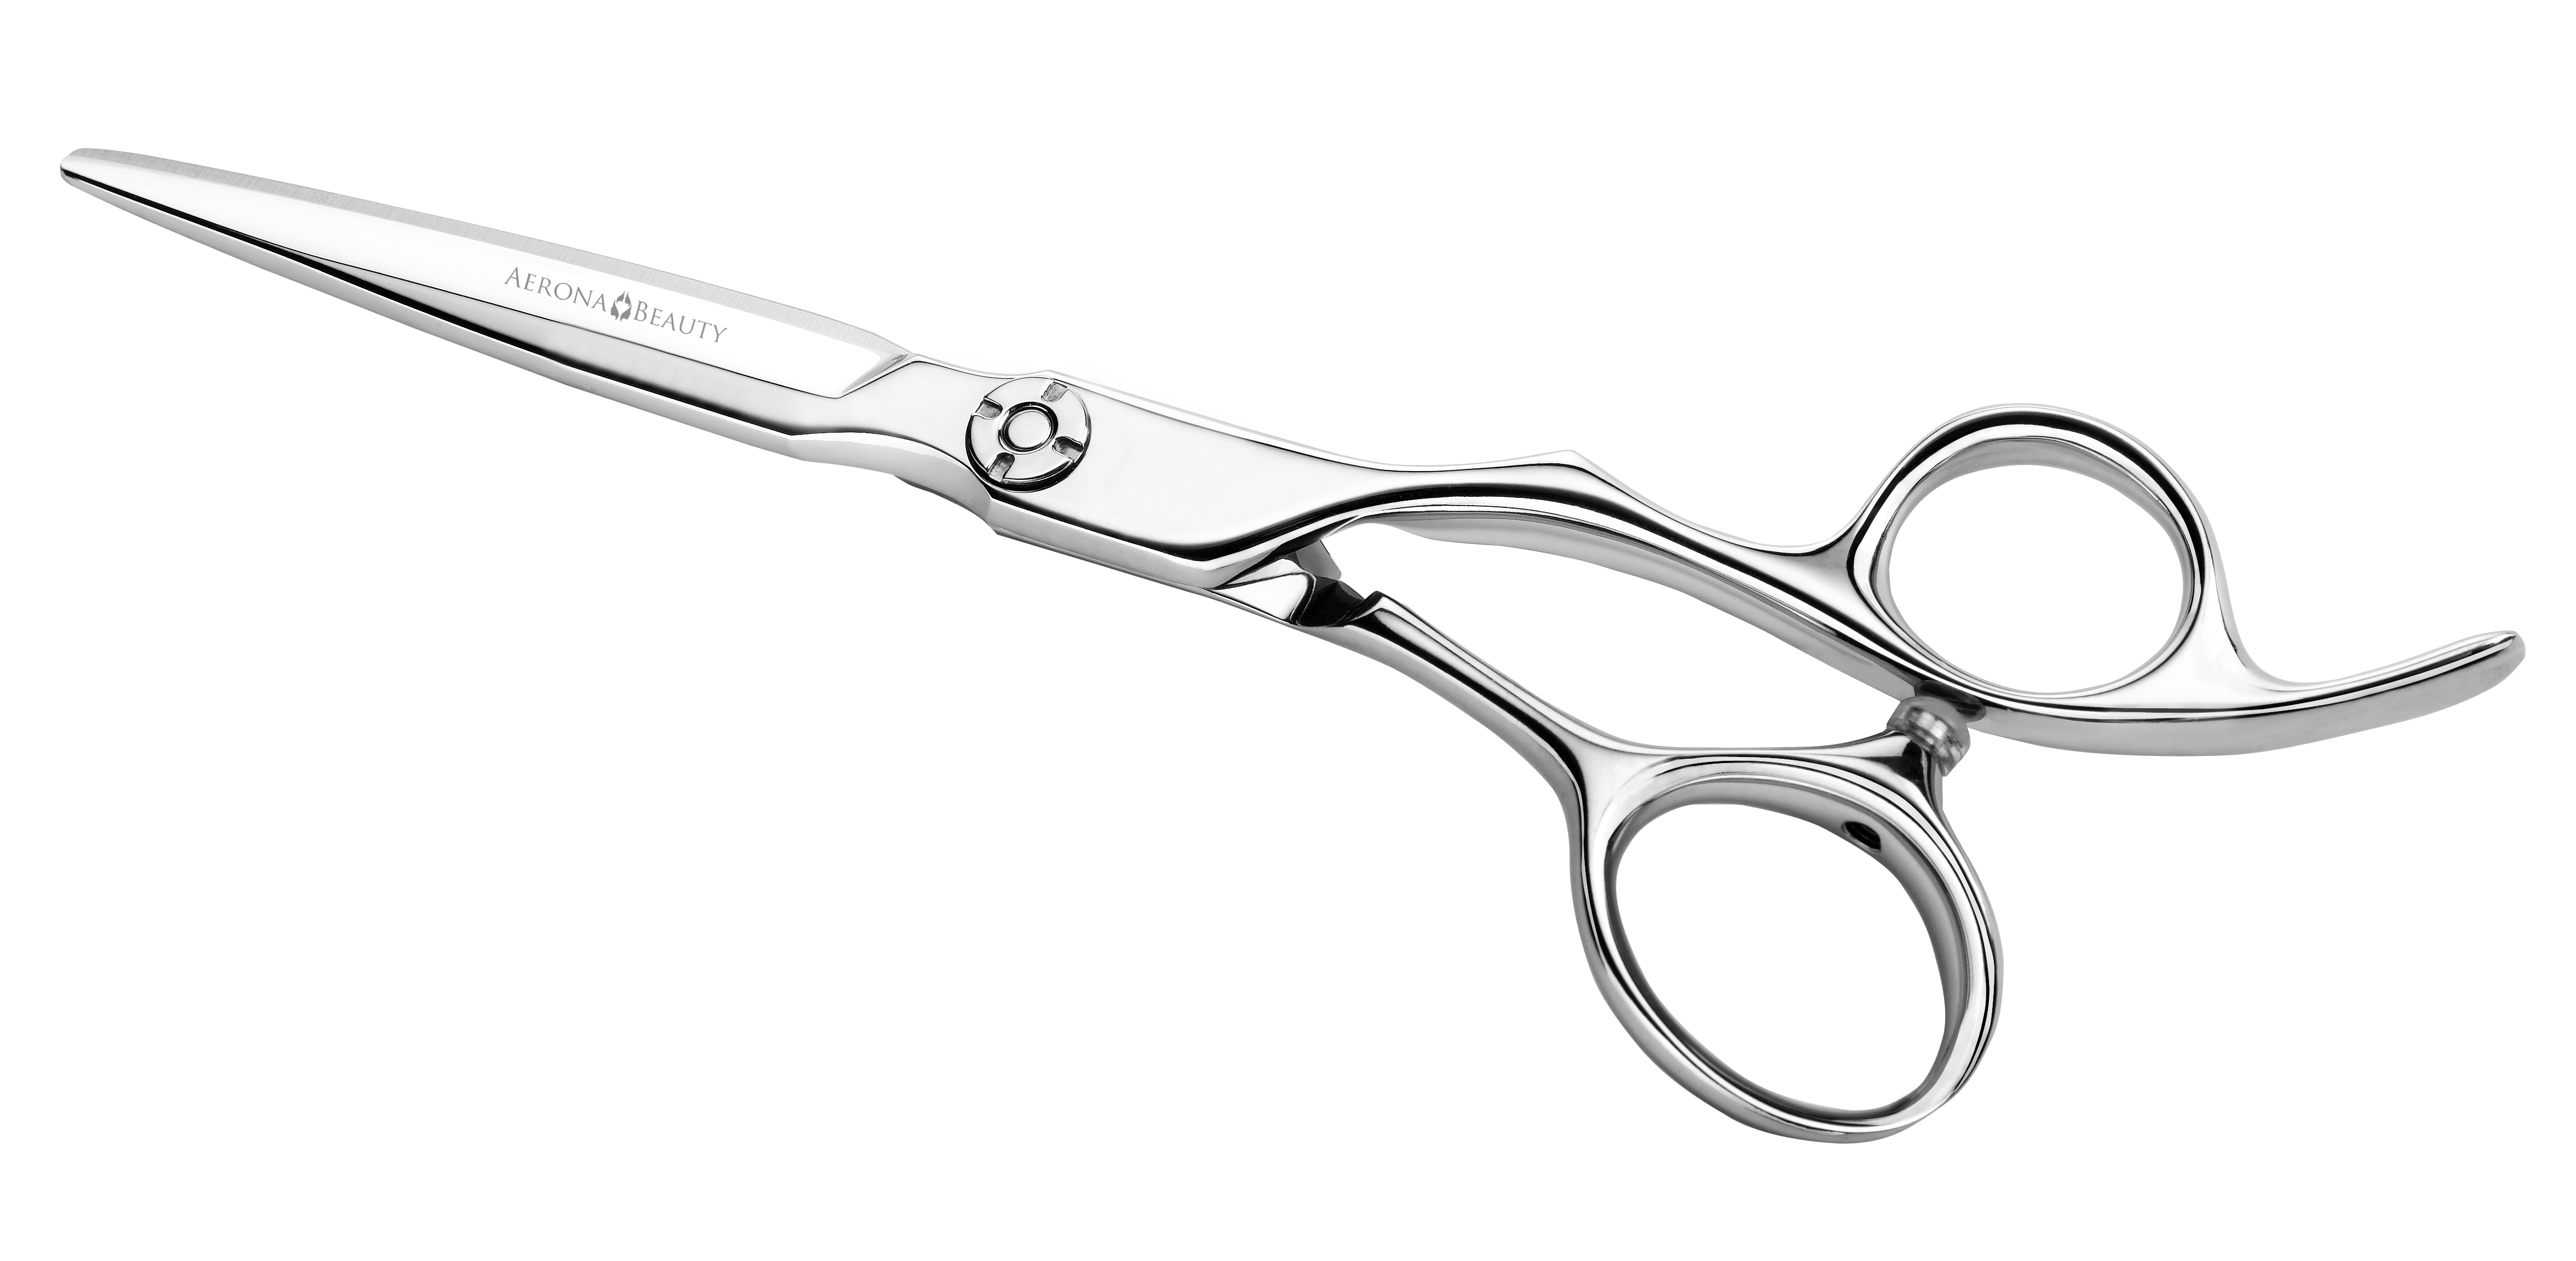 haircut clipart scissors